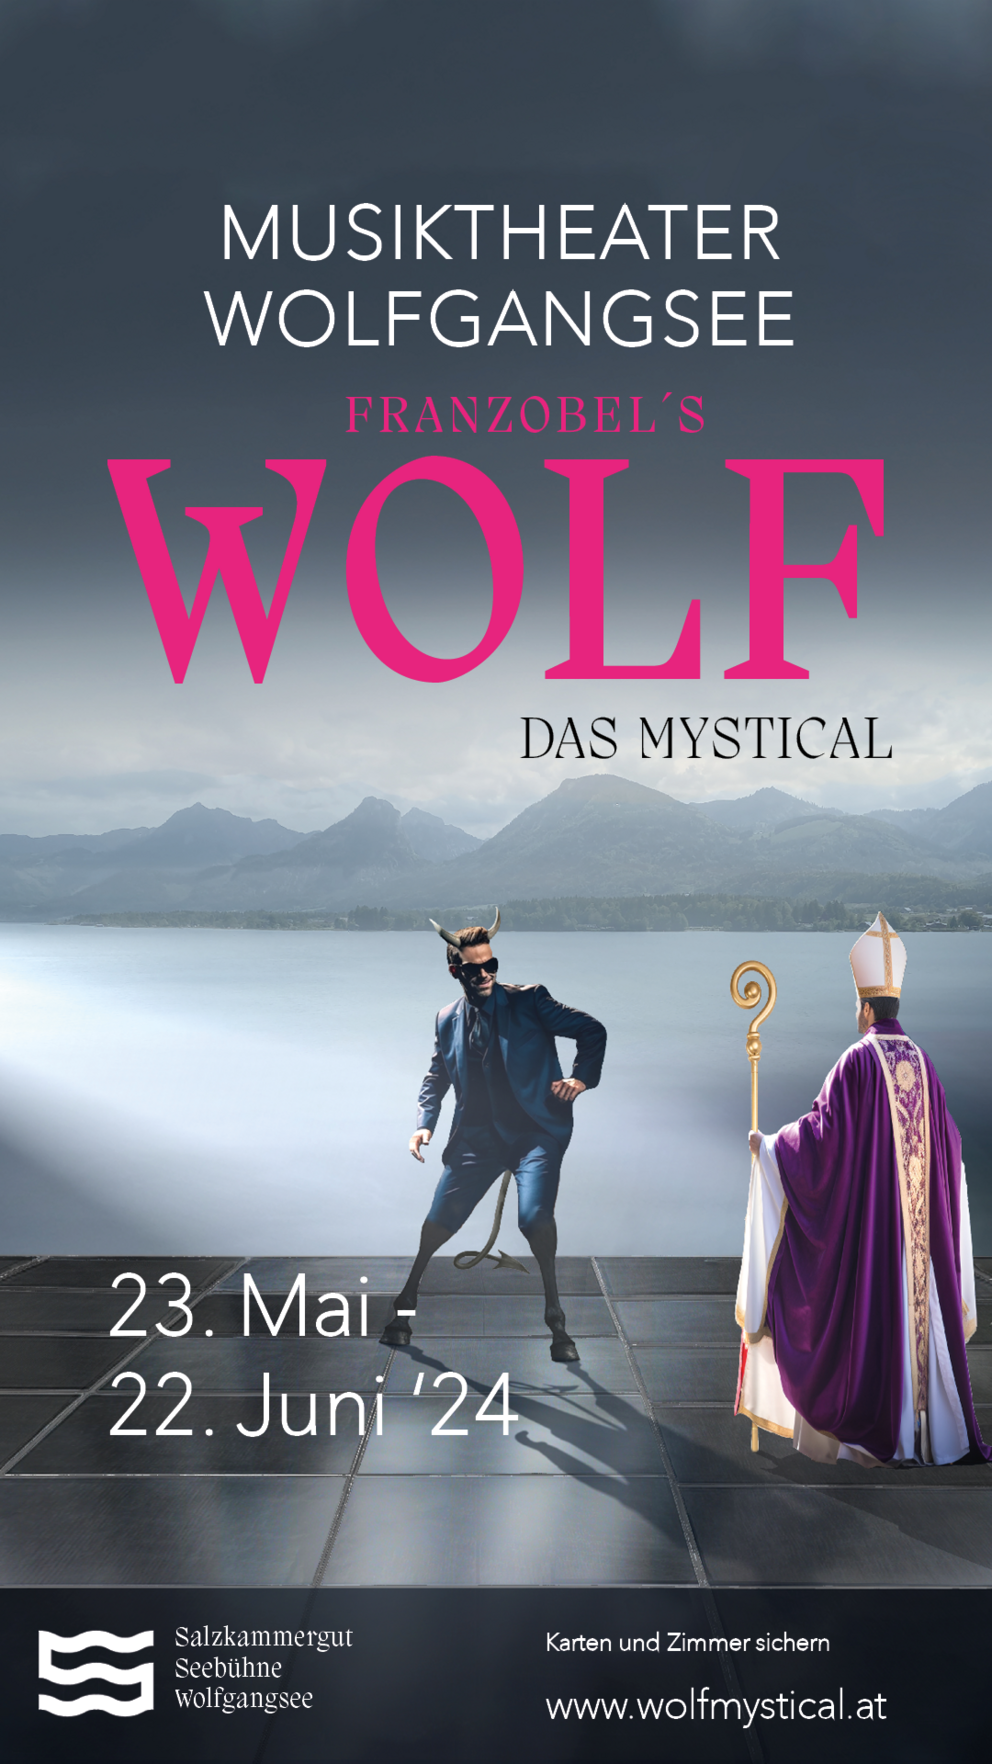 Das Werbeplakat für das Musiktheater am Wolfgangsee "Franzobel's Wolf das Mystical".